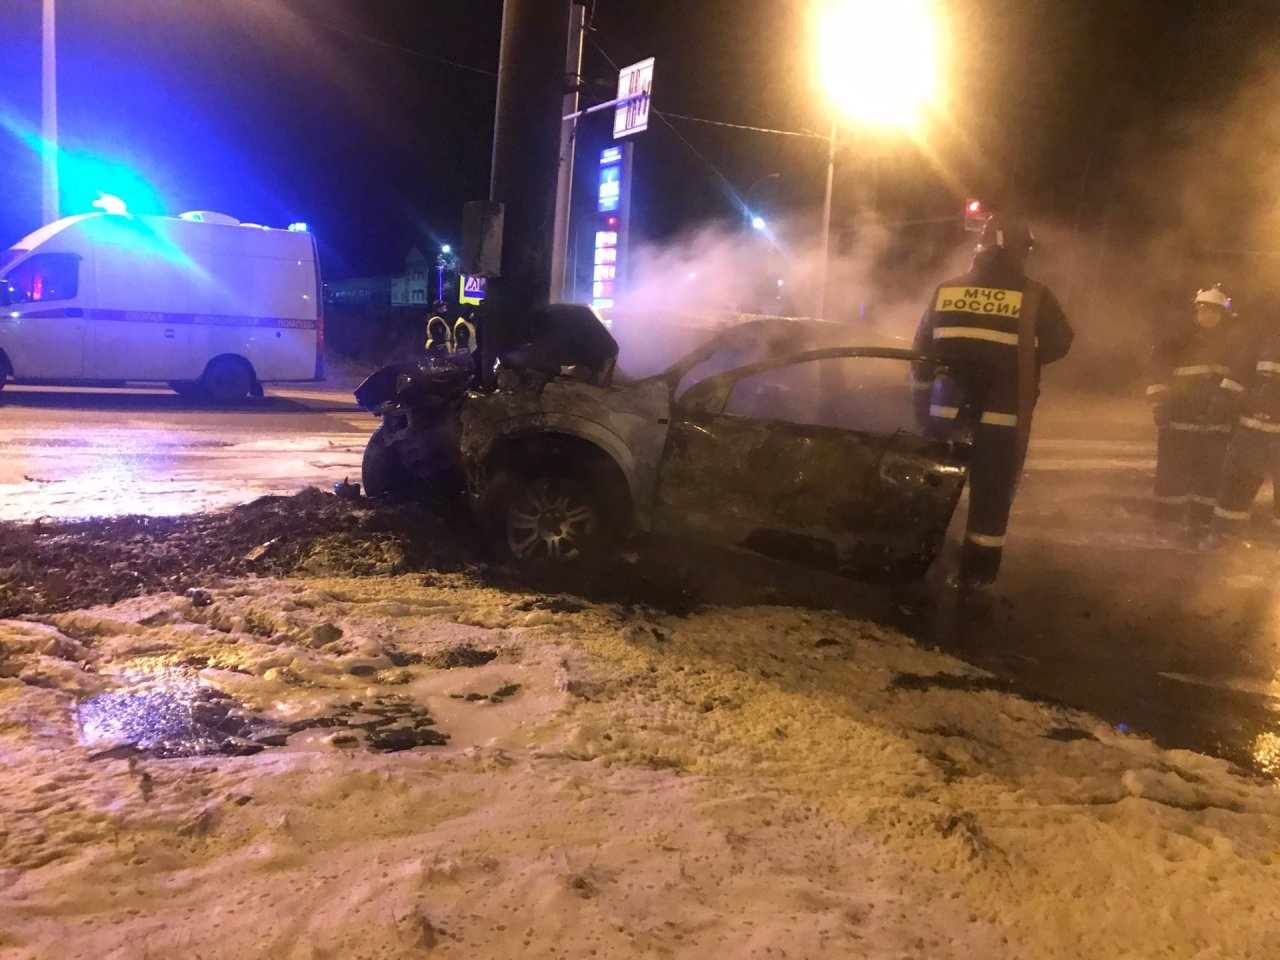 Спасали очевидцы: в Ярославле авто врезалось в столб и загорелось. Видео